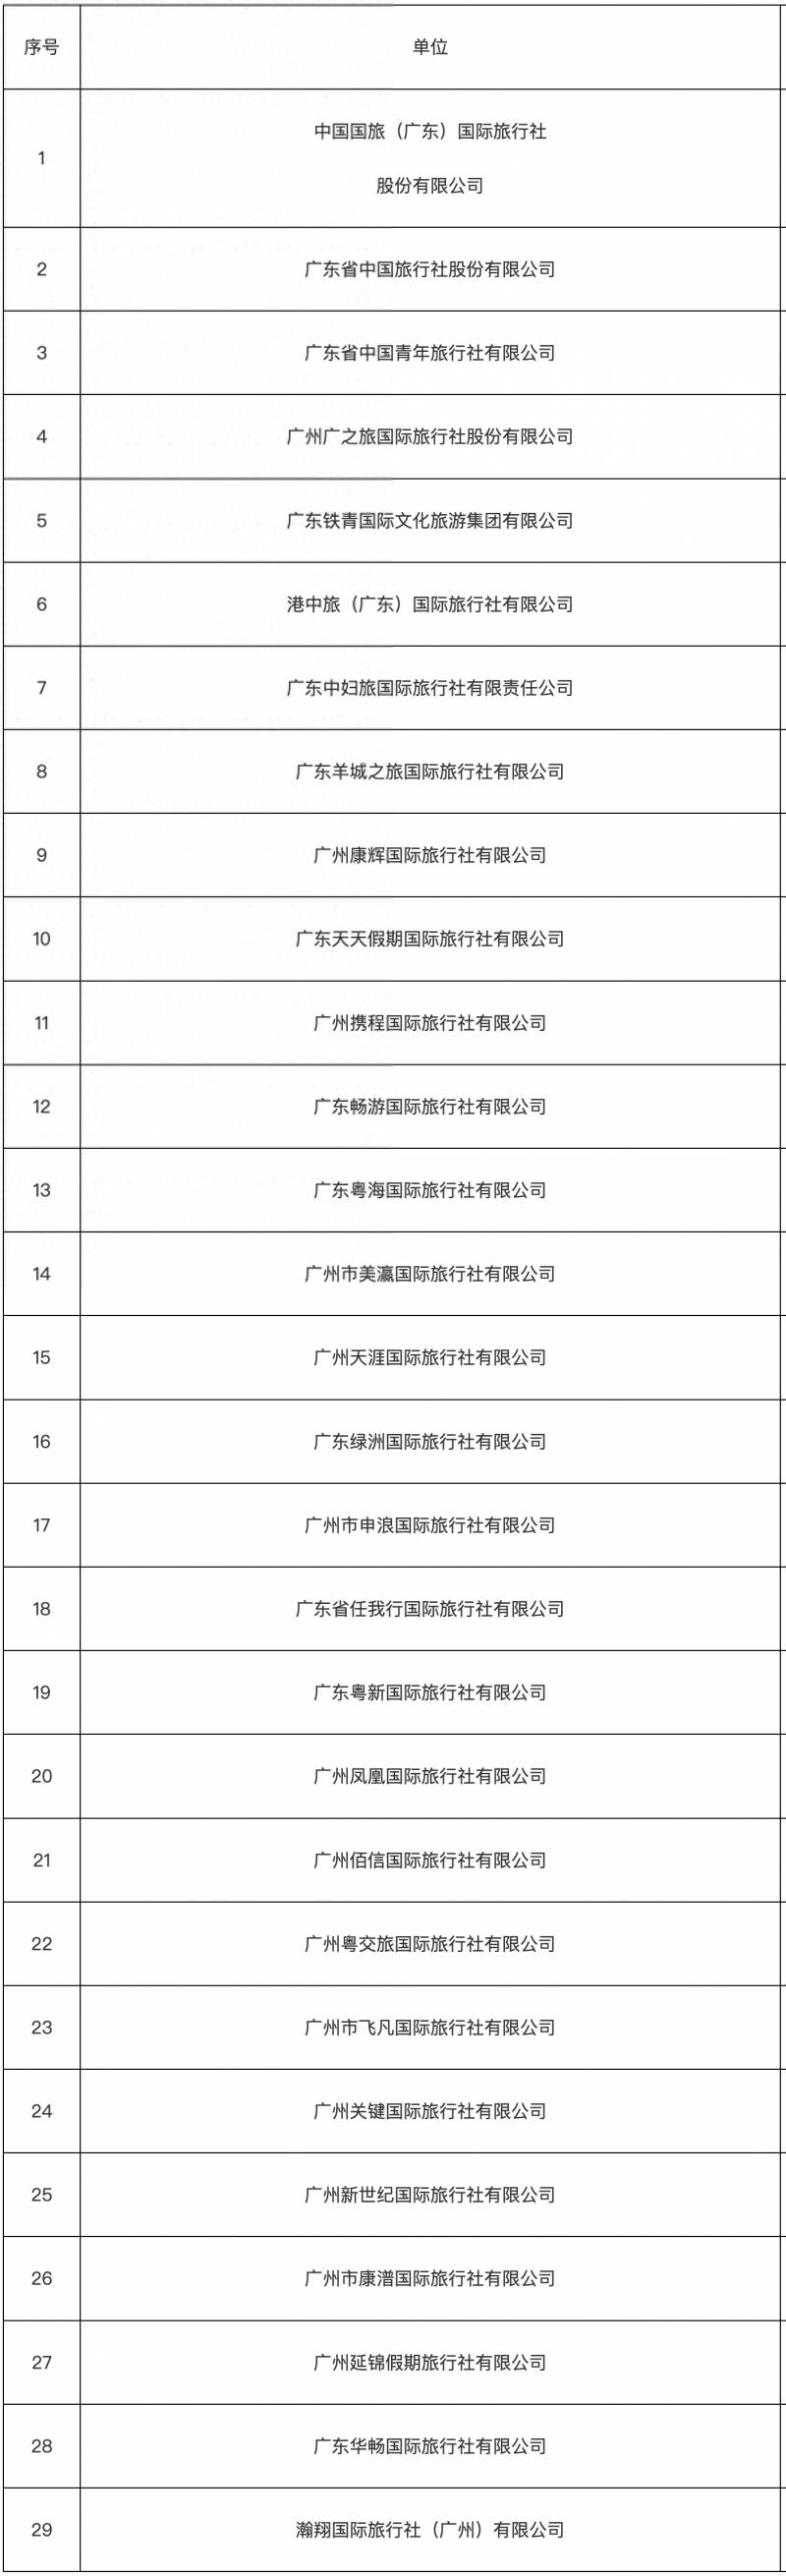 广州发布旅行社诚信名单，首批中小学生研学实践承办机构亮相